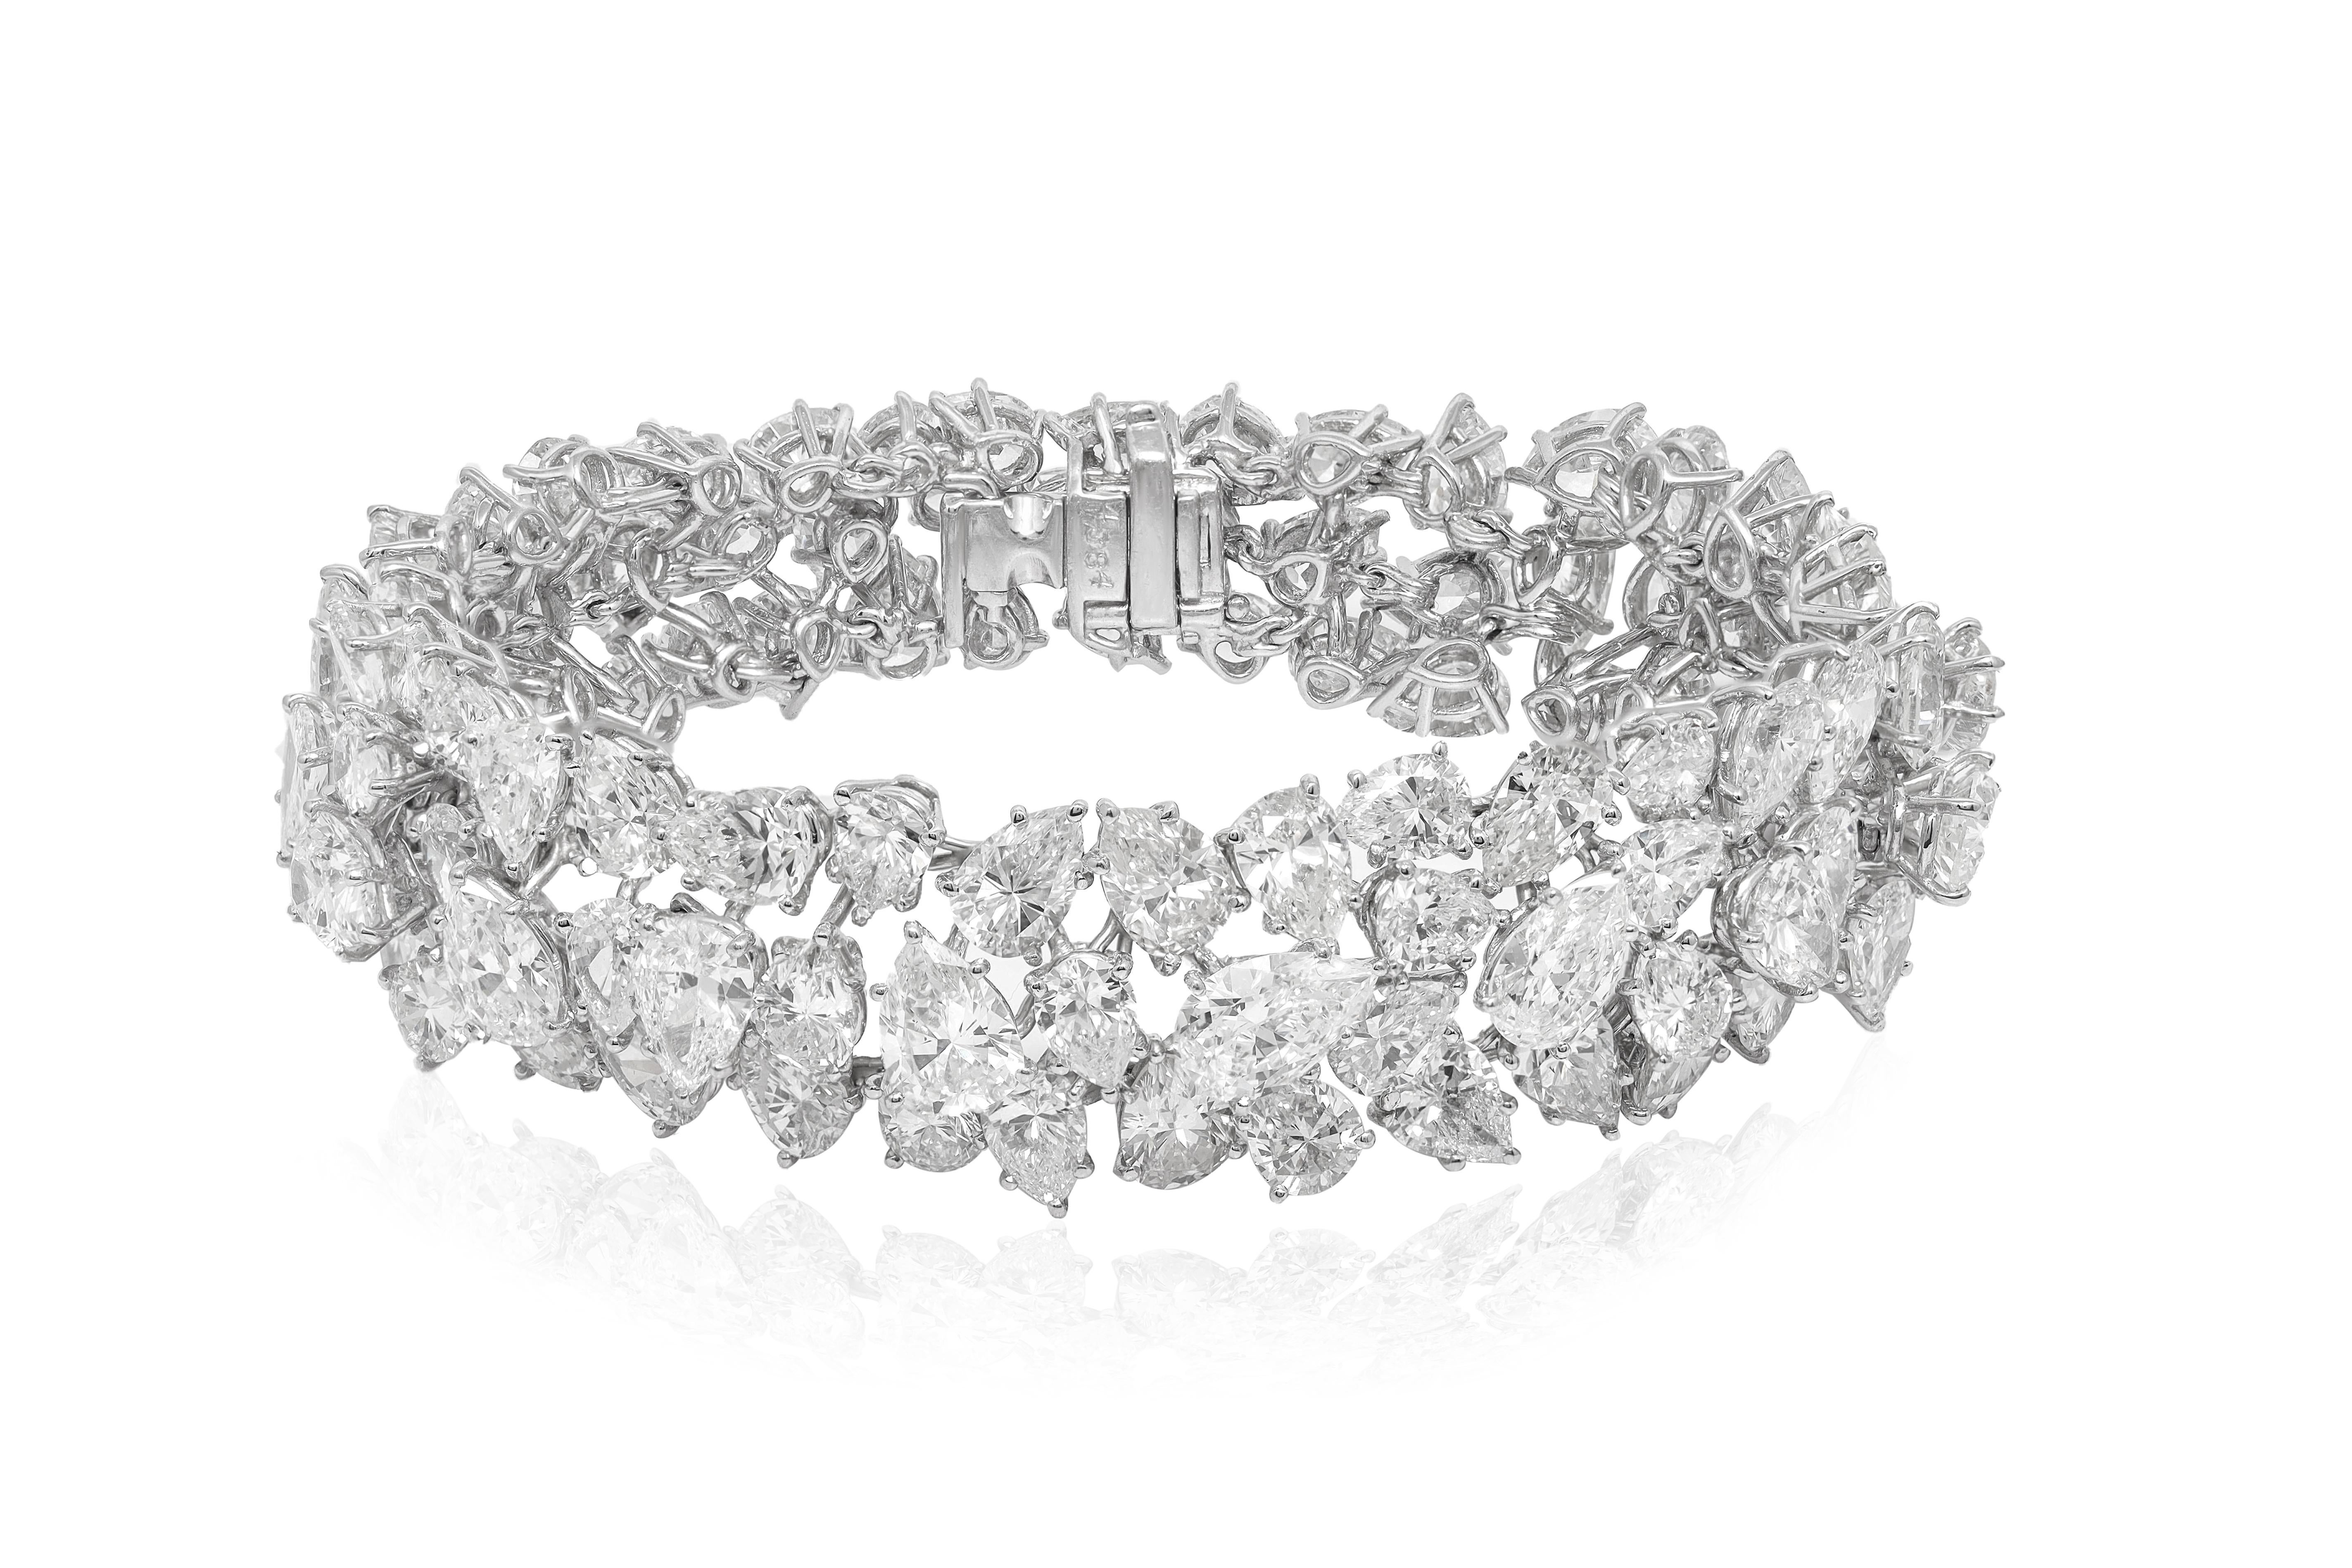 Platin-Diamant-Mode-Armband mit Clustern von 45,00 cts tw Birne und runden Diamanten
Diana M. ist seit über 35 Jahren ein führender Anbieter von hochwertigem Schmuck.
Diana M ist eine zentrale Anlaufstelle für alle Ihre Schmuckeinkäufe und führt